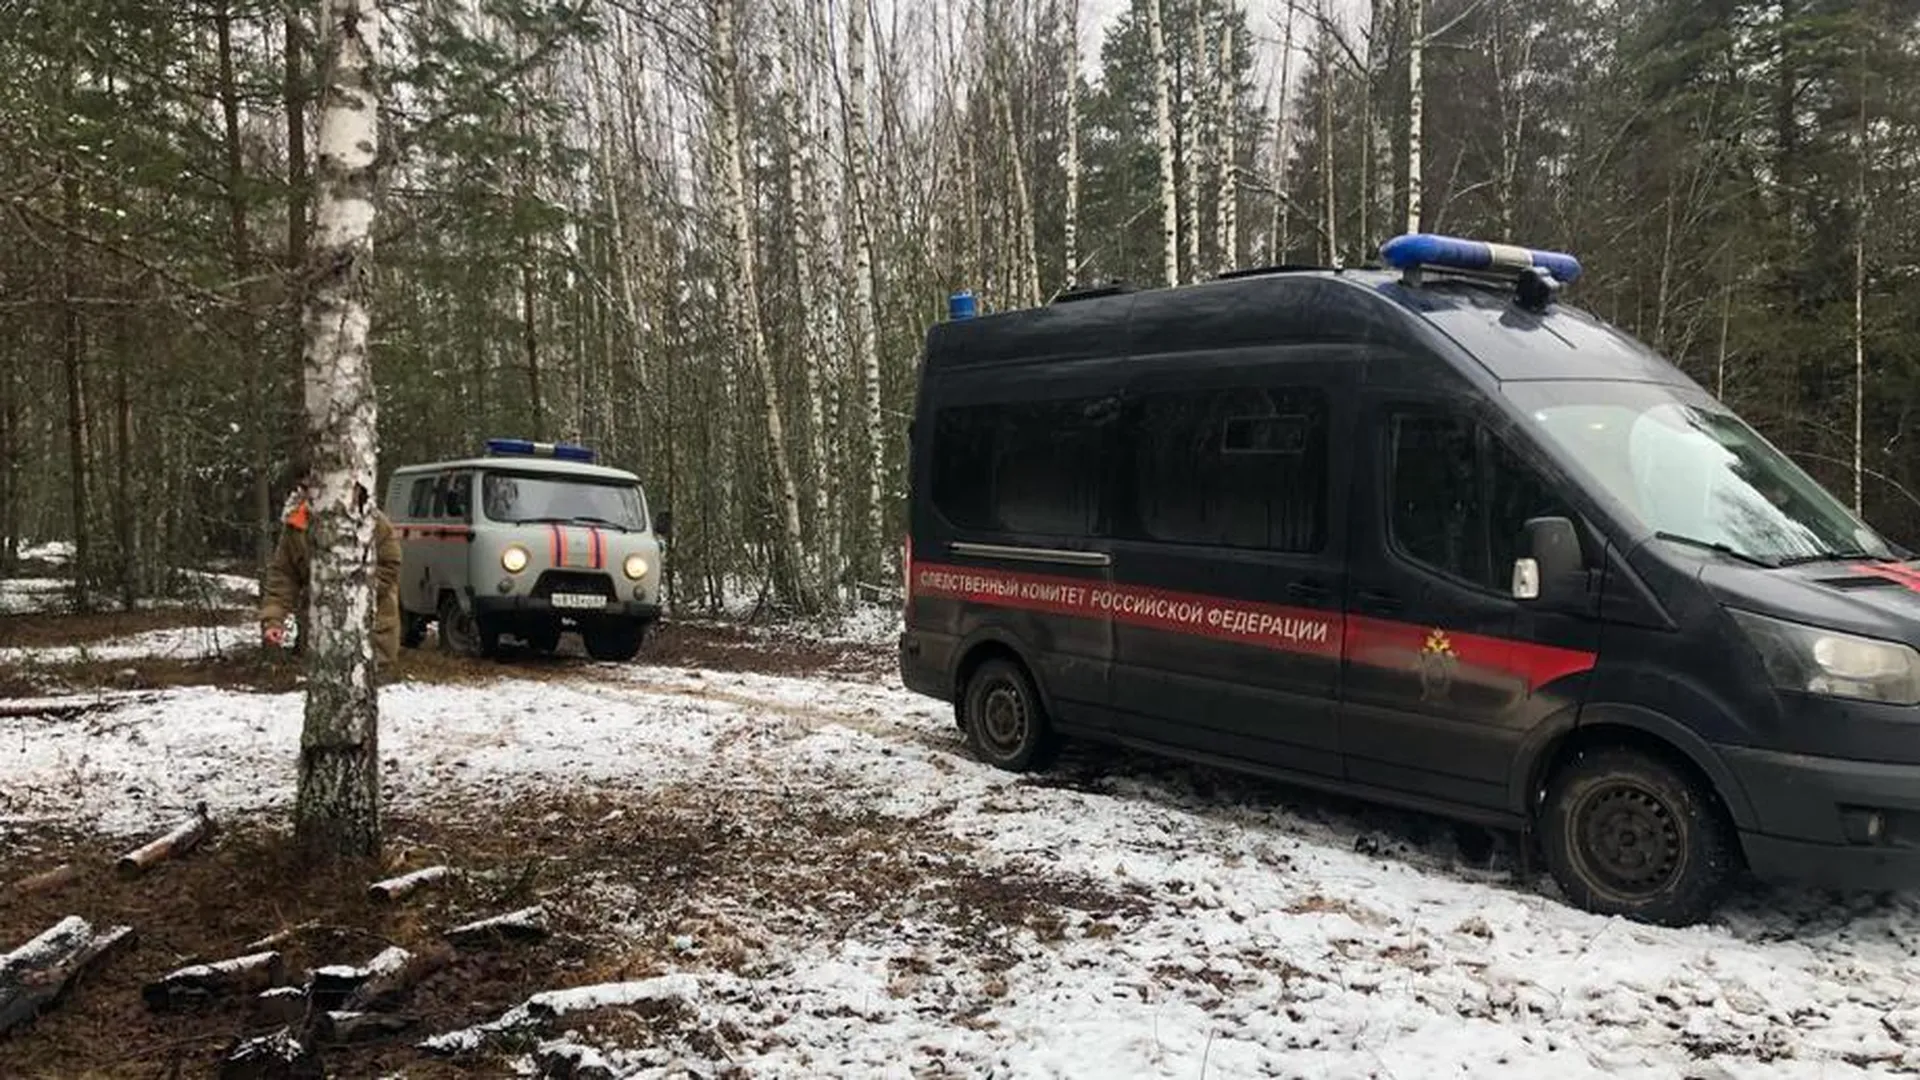 Останки 16-летнего Влада Б. нашли в лесу под Смоленском